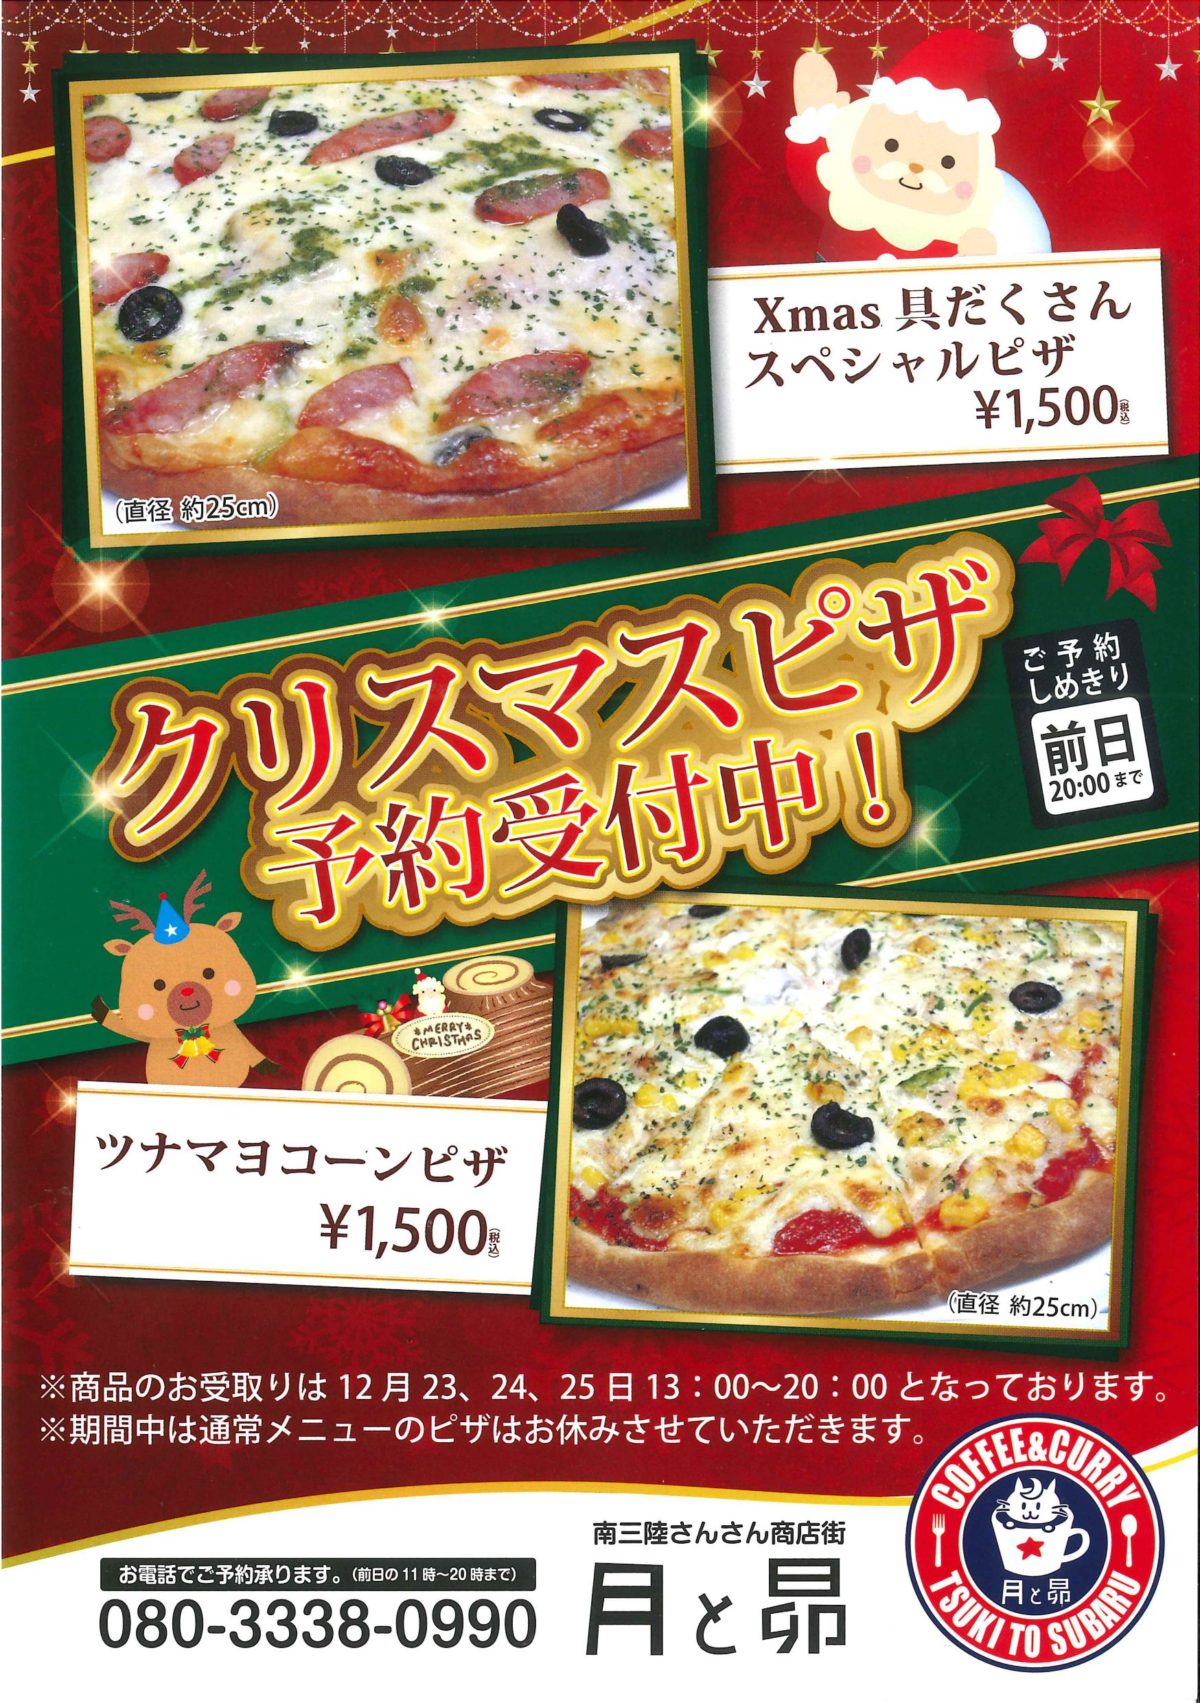 ”月と昴”の限定『クリスマスピザ』予約受付中！クリスマスは”月と昴”のピザで決まりですね！